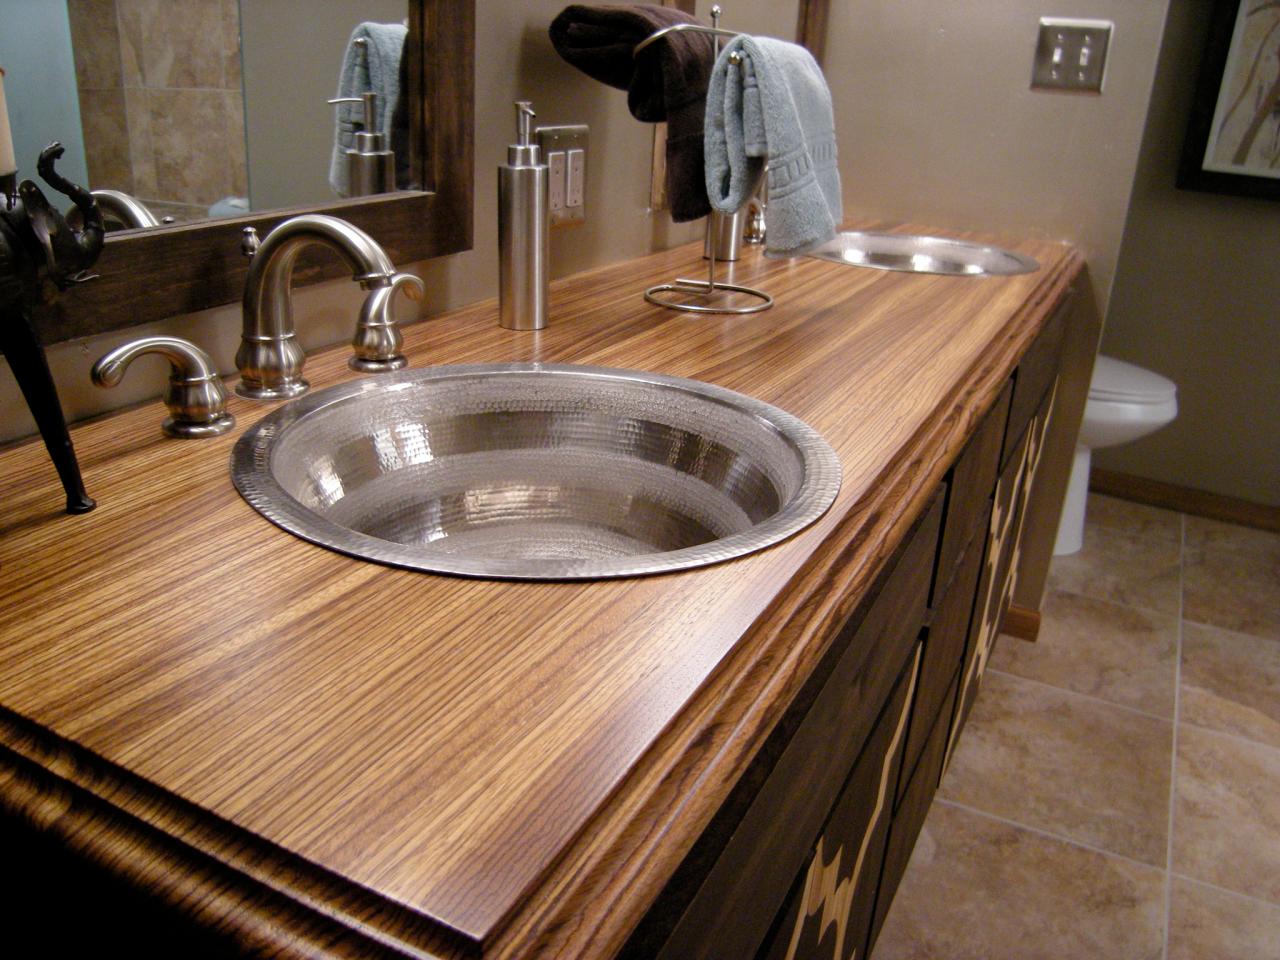 Bathroom Countertop Material Options, Building A Bathroom Vanity Top